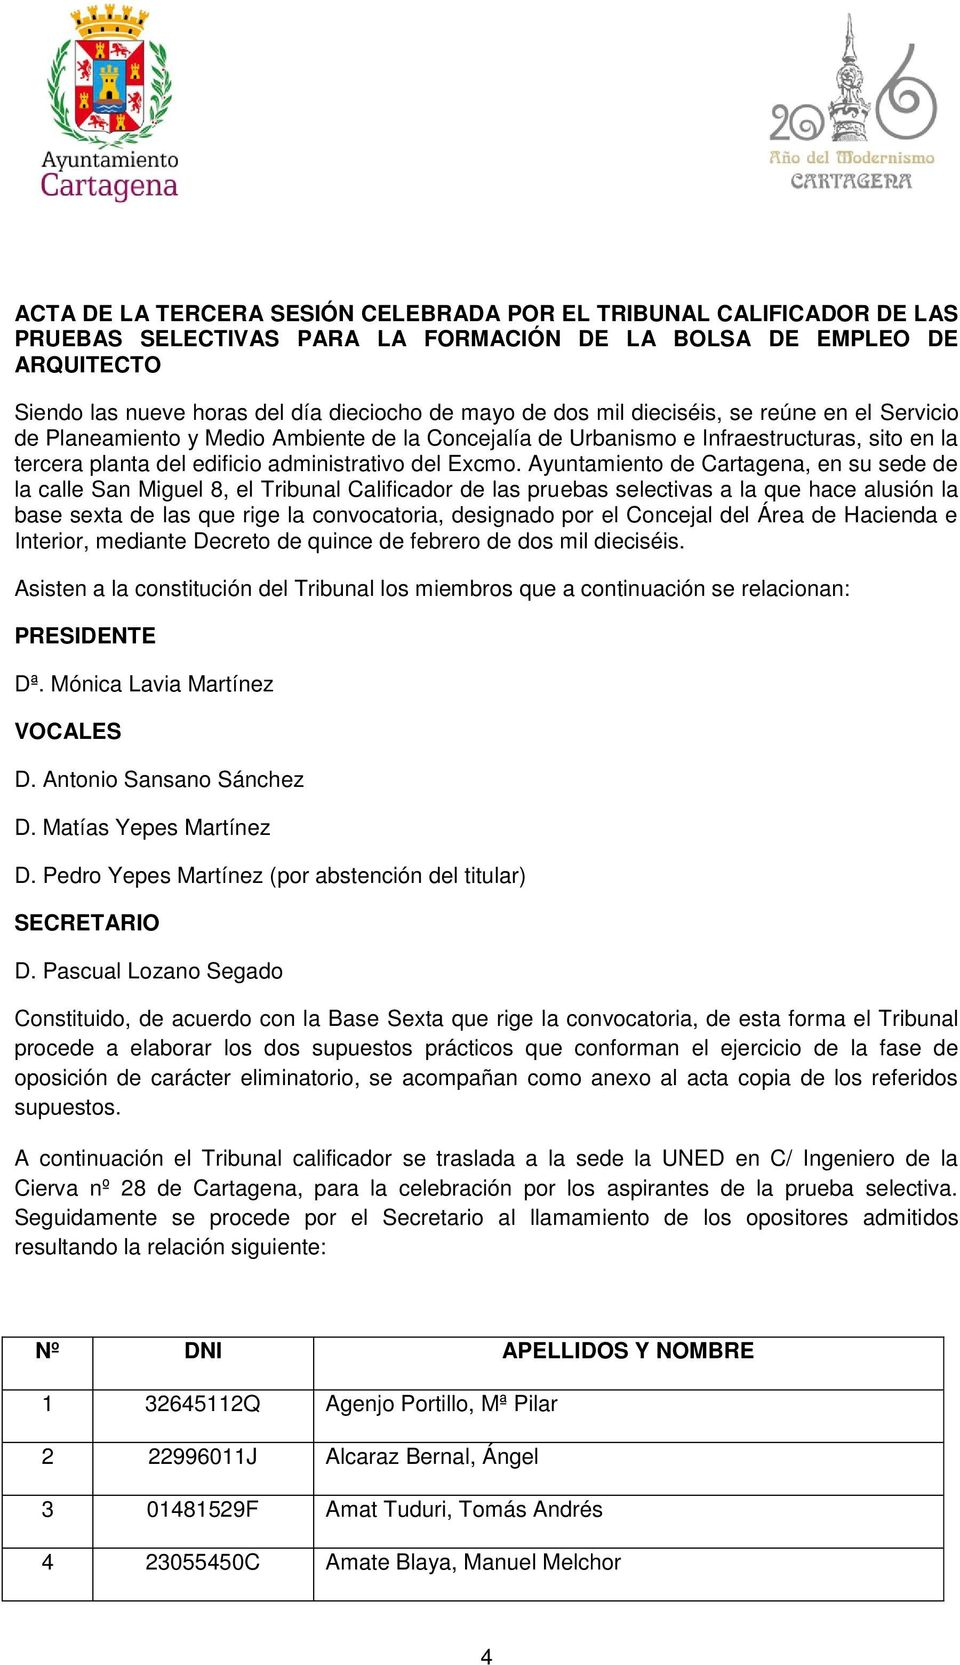 Ayuntamiento de Cartagena, en su sede de la calle San Miguel 8, el Tribunal Calificador de las pruebas selectivas a la que hace alusión la base sexta de las que rige la convocatoria, designado por el